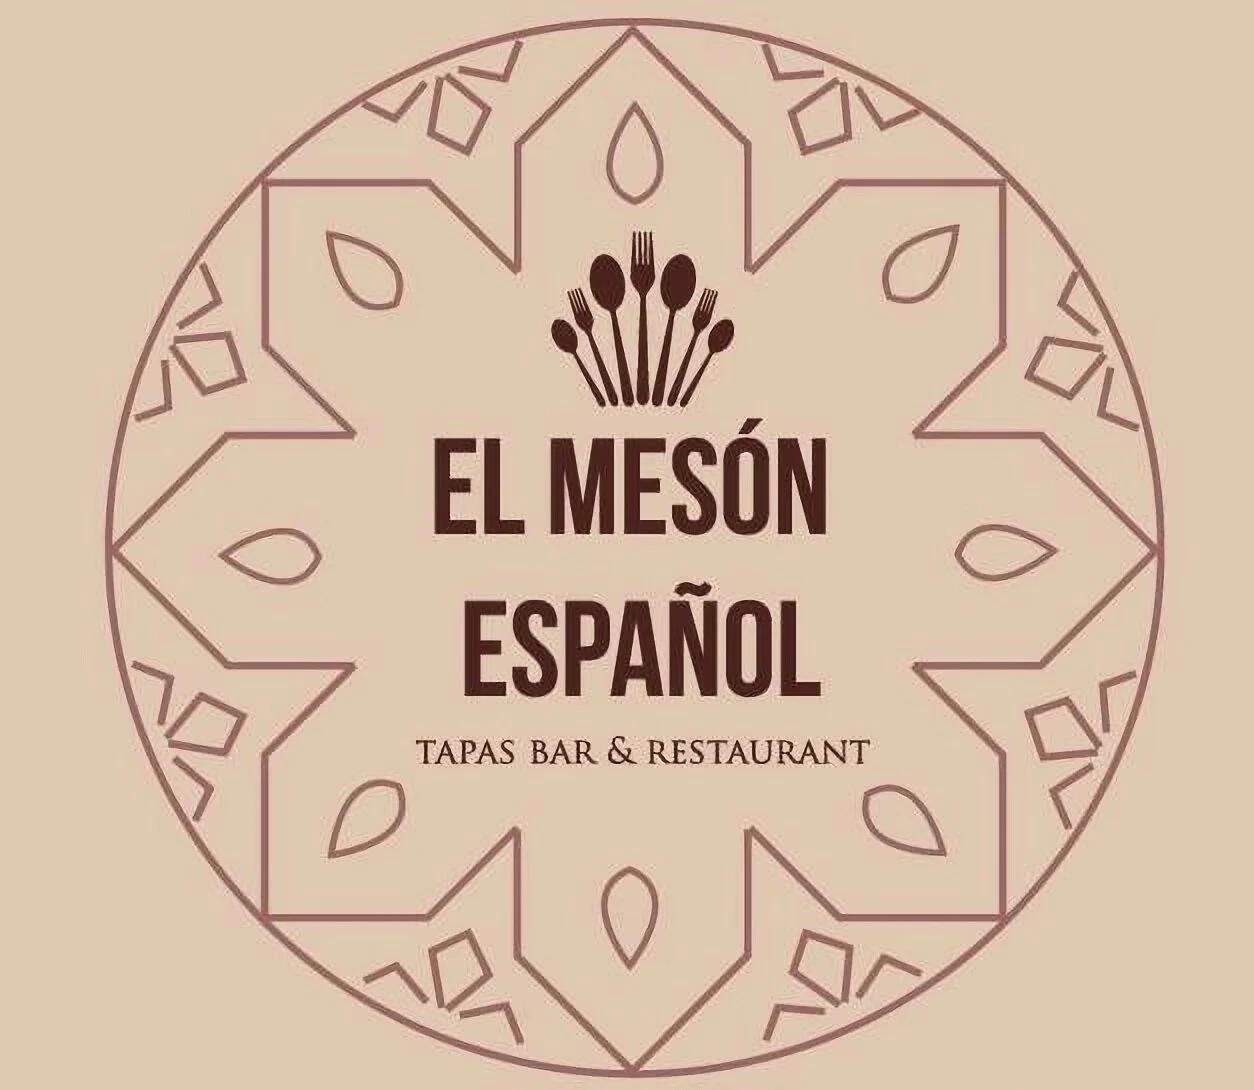 Restaurantes-el-meson-espanol-17934